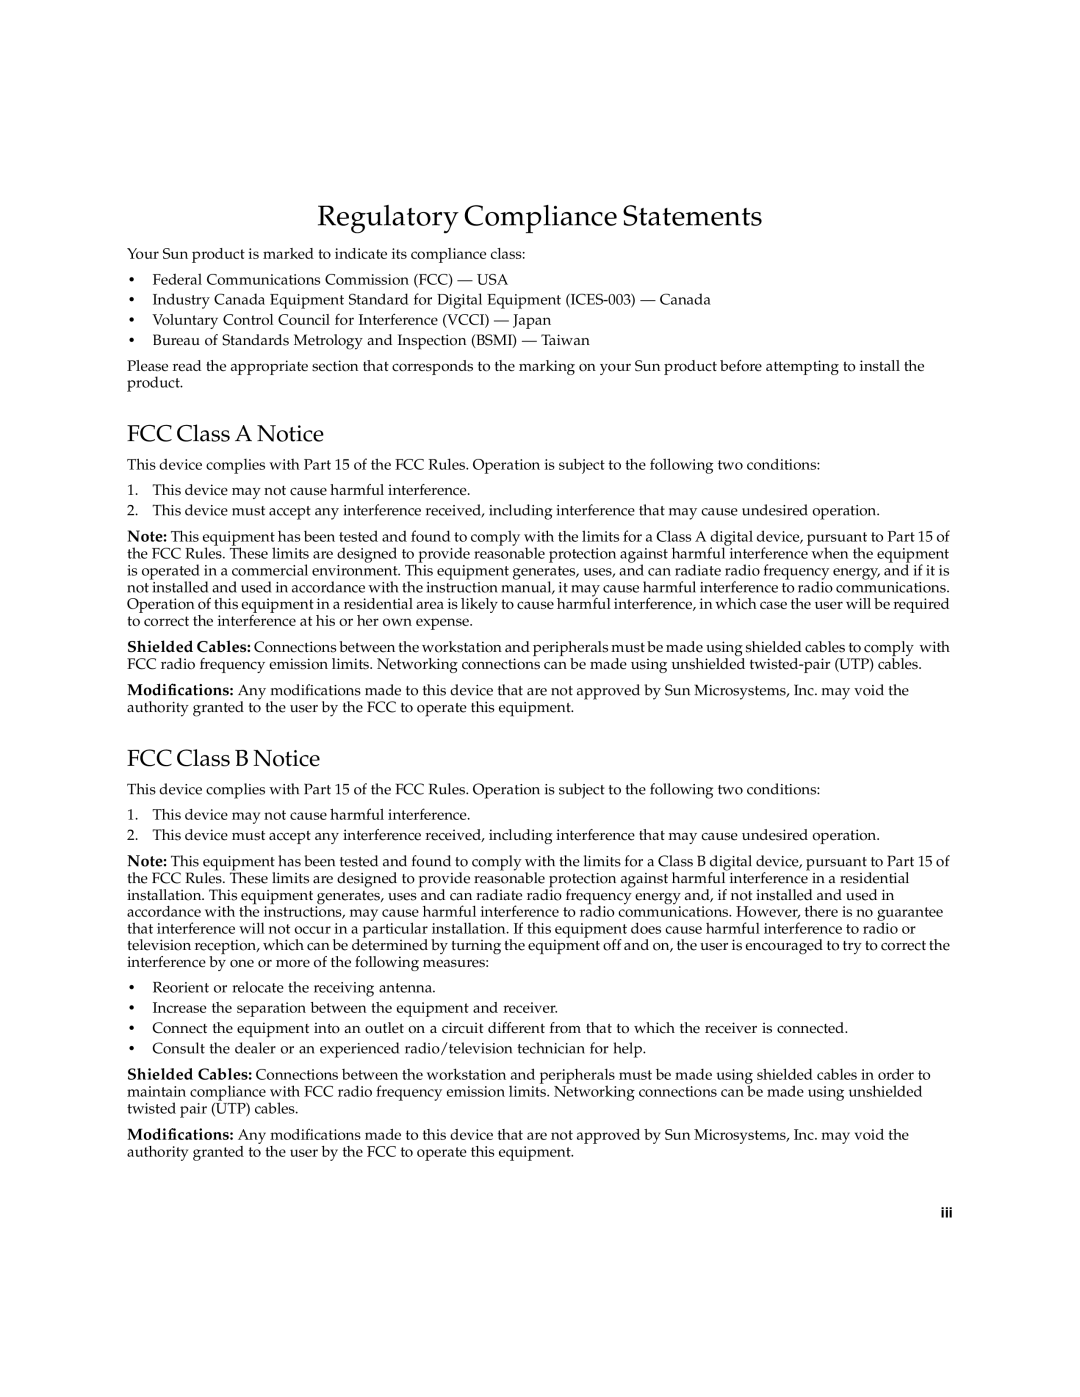 Sun Microsystems 6U manual Regulatory Compliance Statements, FCC Class A Notice, FCC Class B Notice 